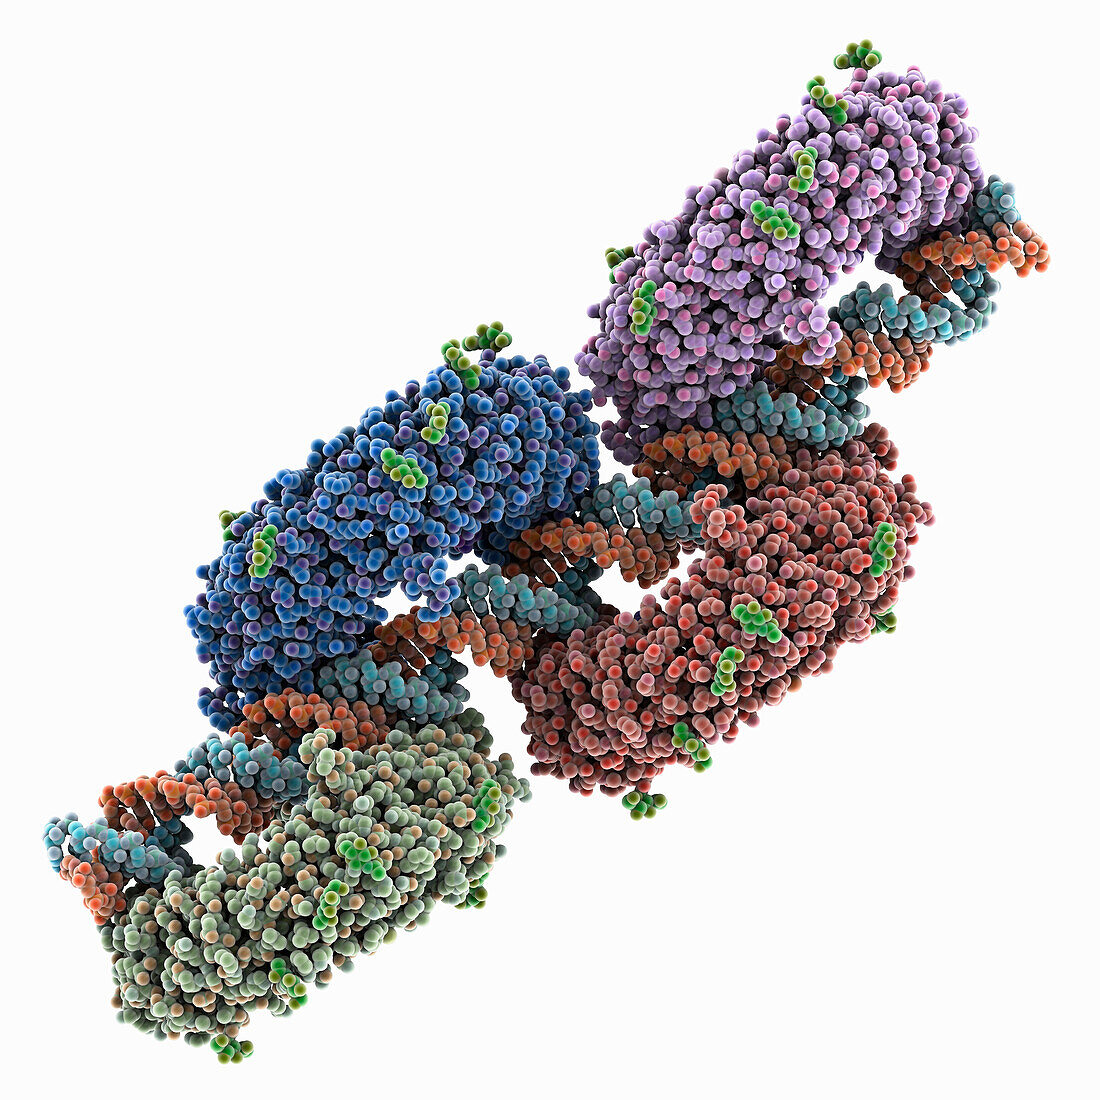 Toll-like receptor3 linear cluster, molecular model